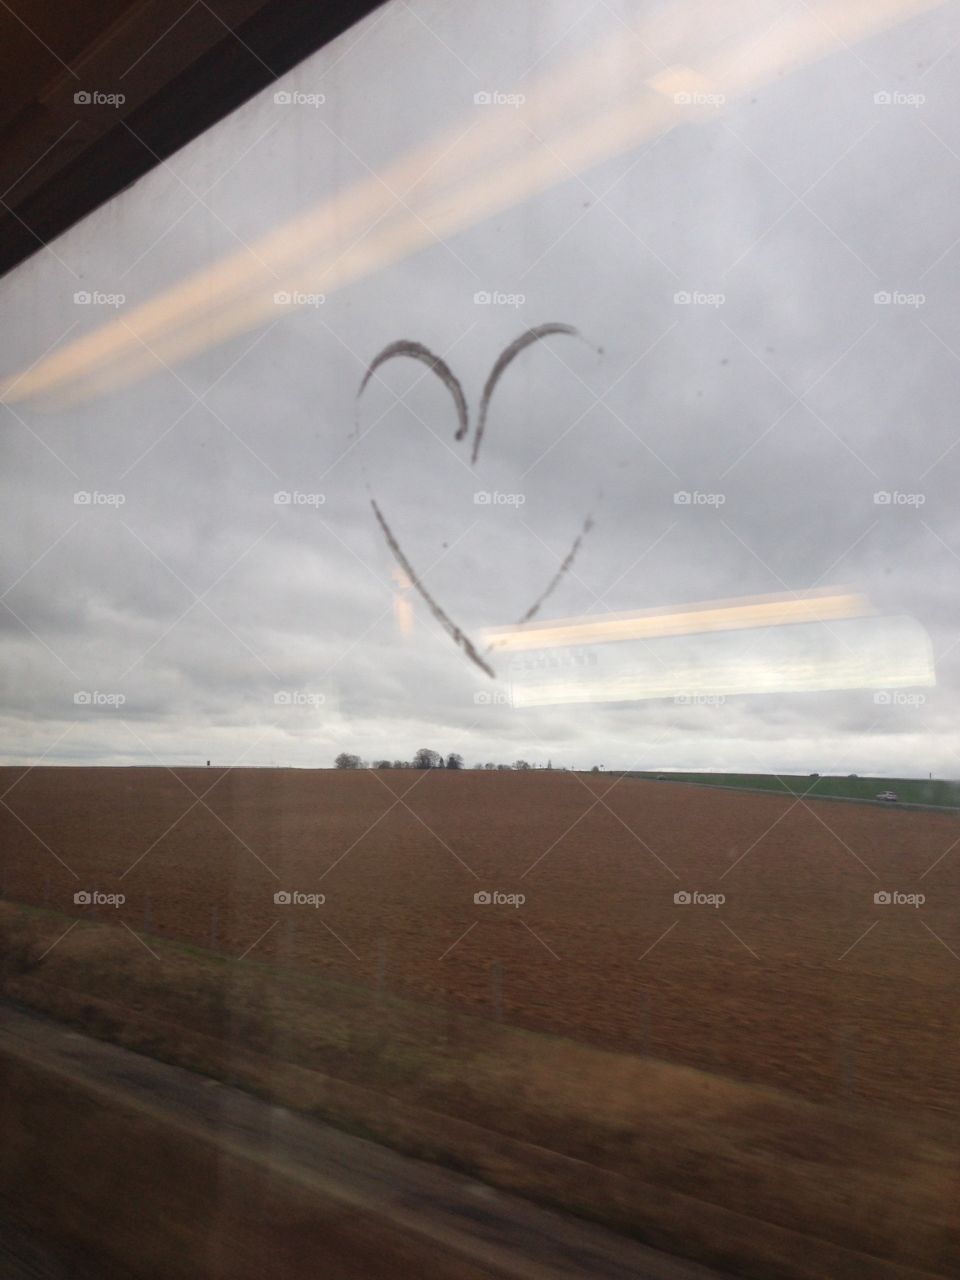 Traced heart on train window. Reims France heart drawn on window overlooking winter fields